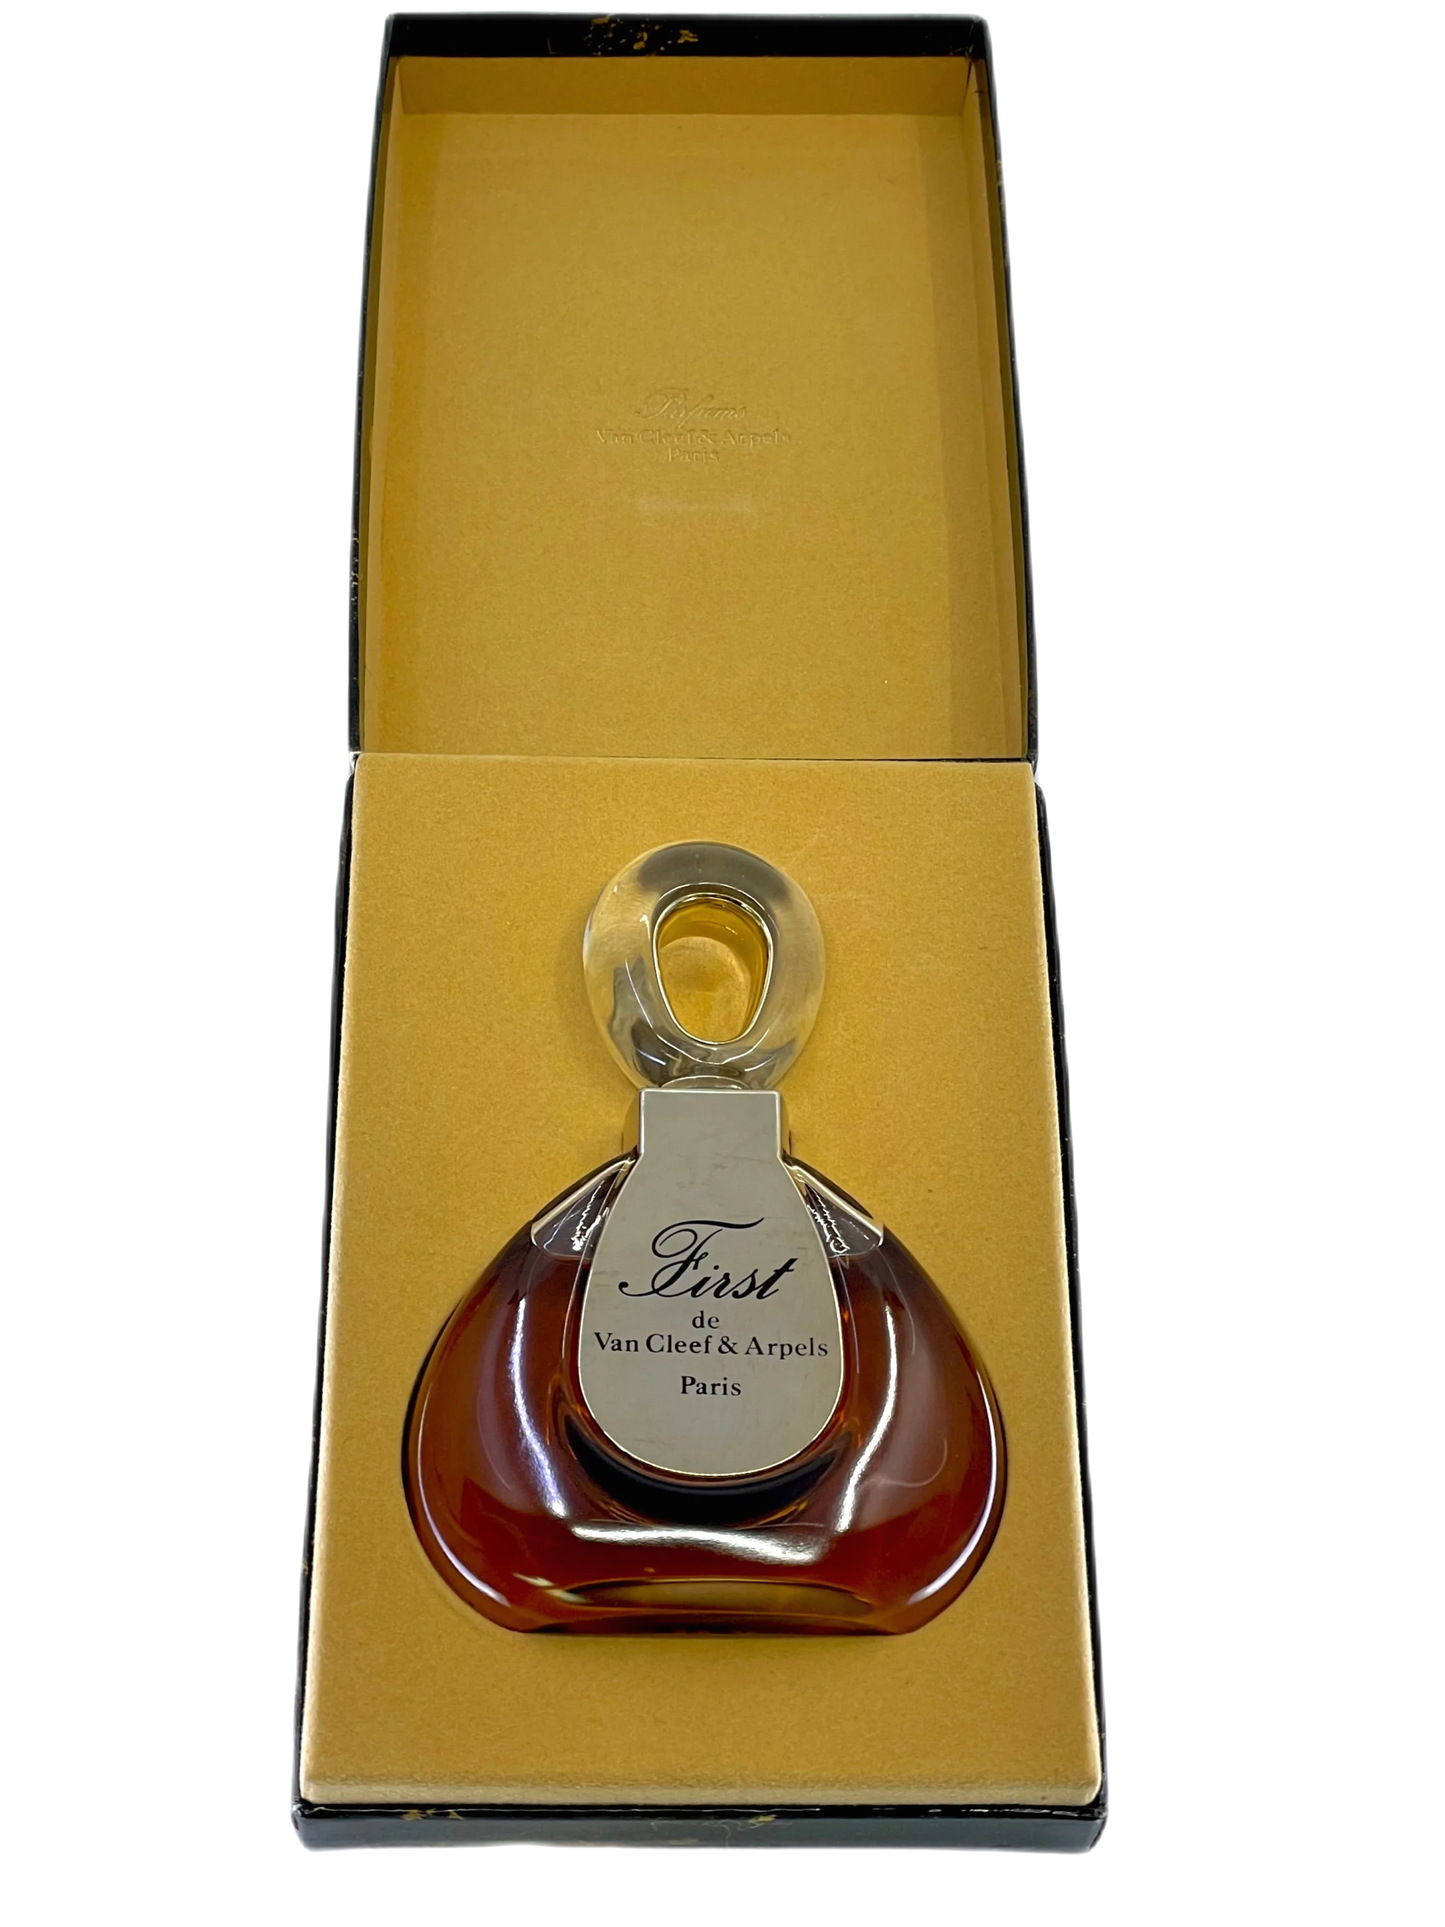 Van Cleef & Arpels FIRST early vintage parfum